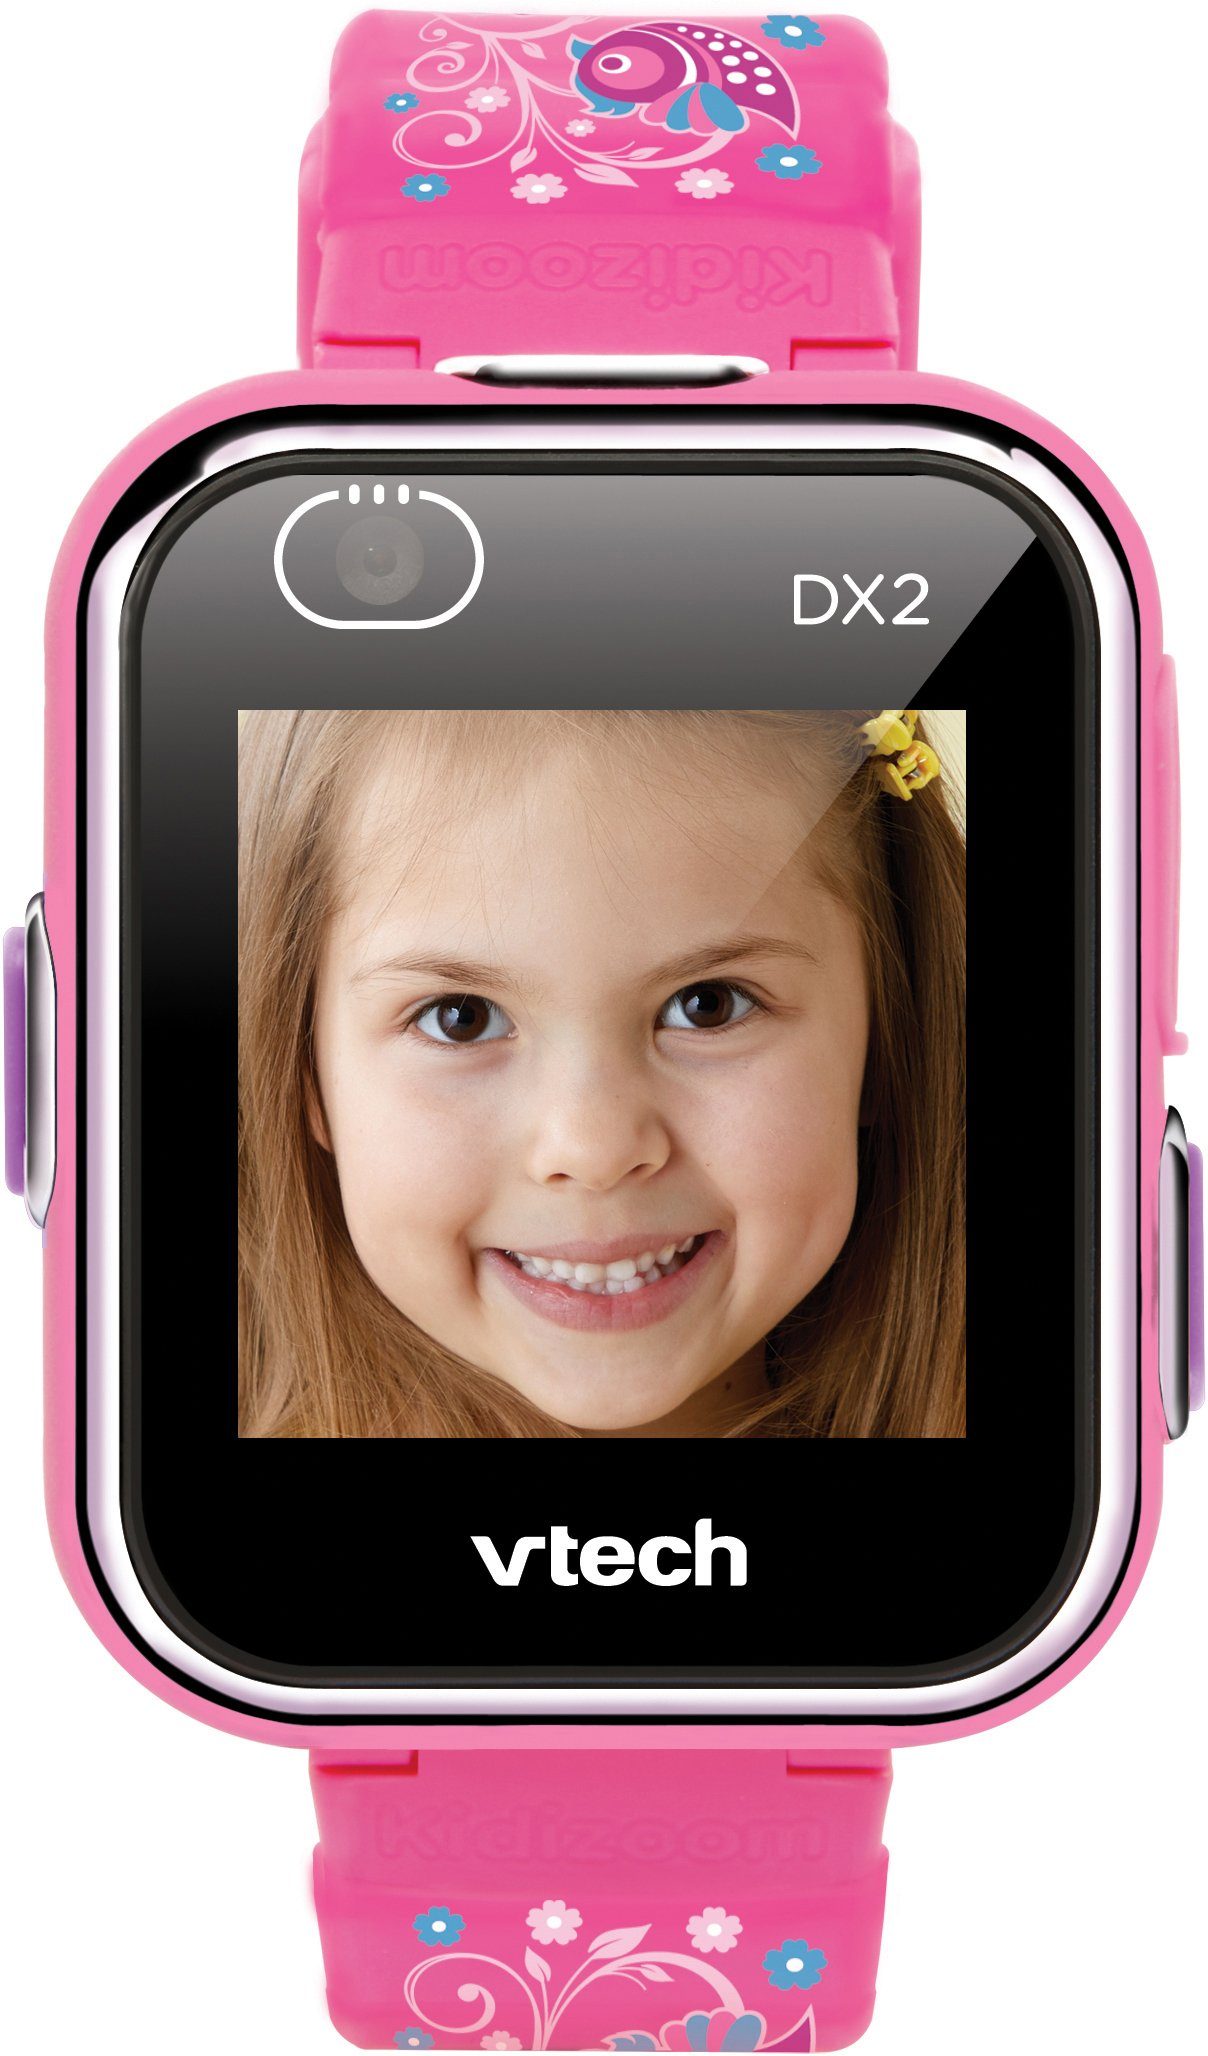 pinkflower, mit Lernspielzeug Kamerafunktion DX2, KidiZoom Vtech® Smart Watch